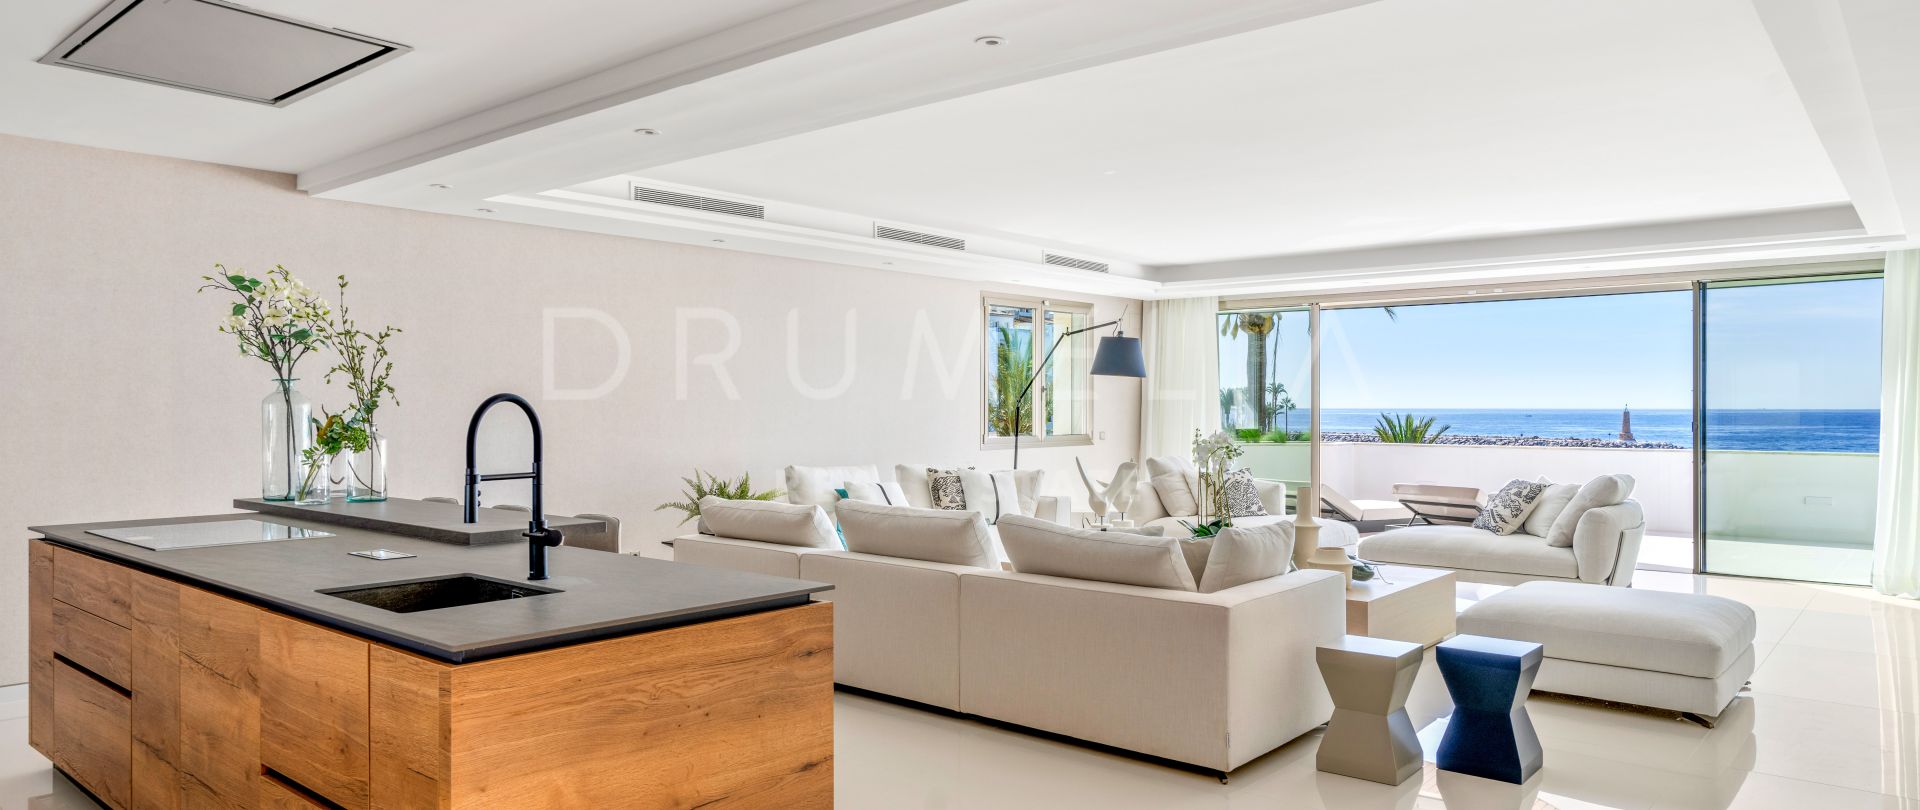 Appartement de 4 chambres en bord de mer avec vue spectaculaire sur la mer dans le Gray D'Albion, l'immeuble le plus convoité de Puerto Banus